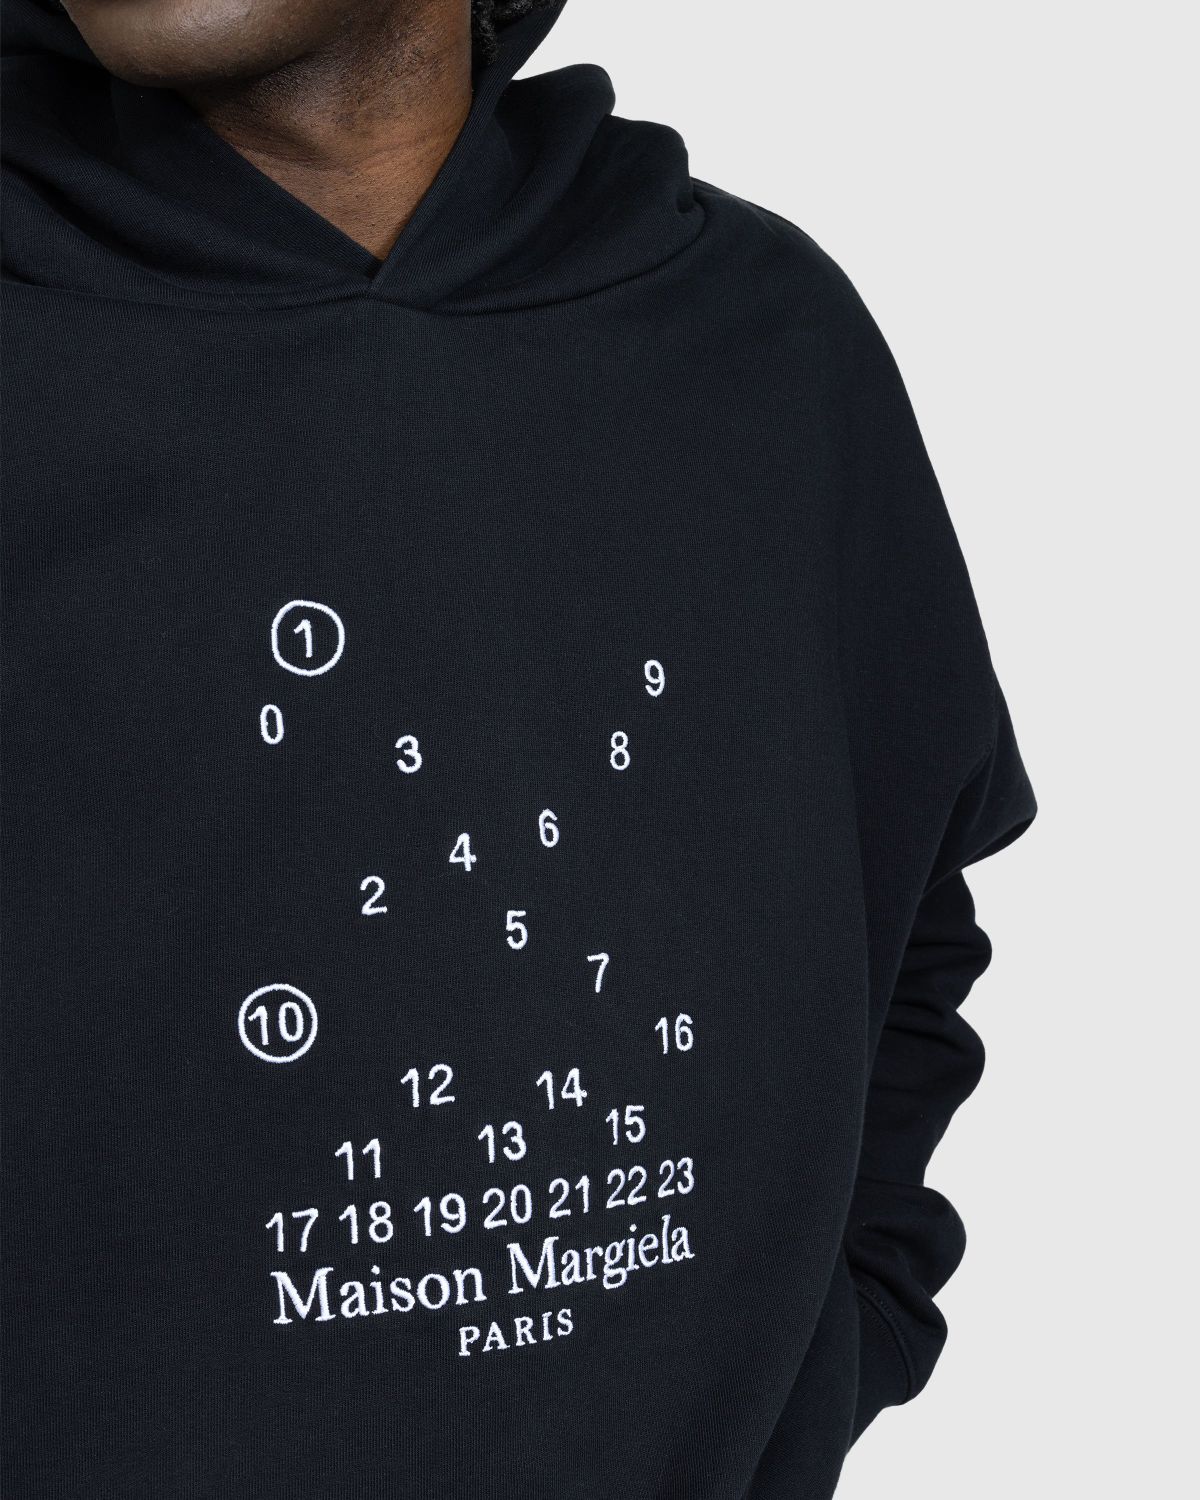 Maison Margiela – Numerical Logo Hoodie Black - Sweats - Black - Image 4